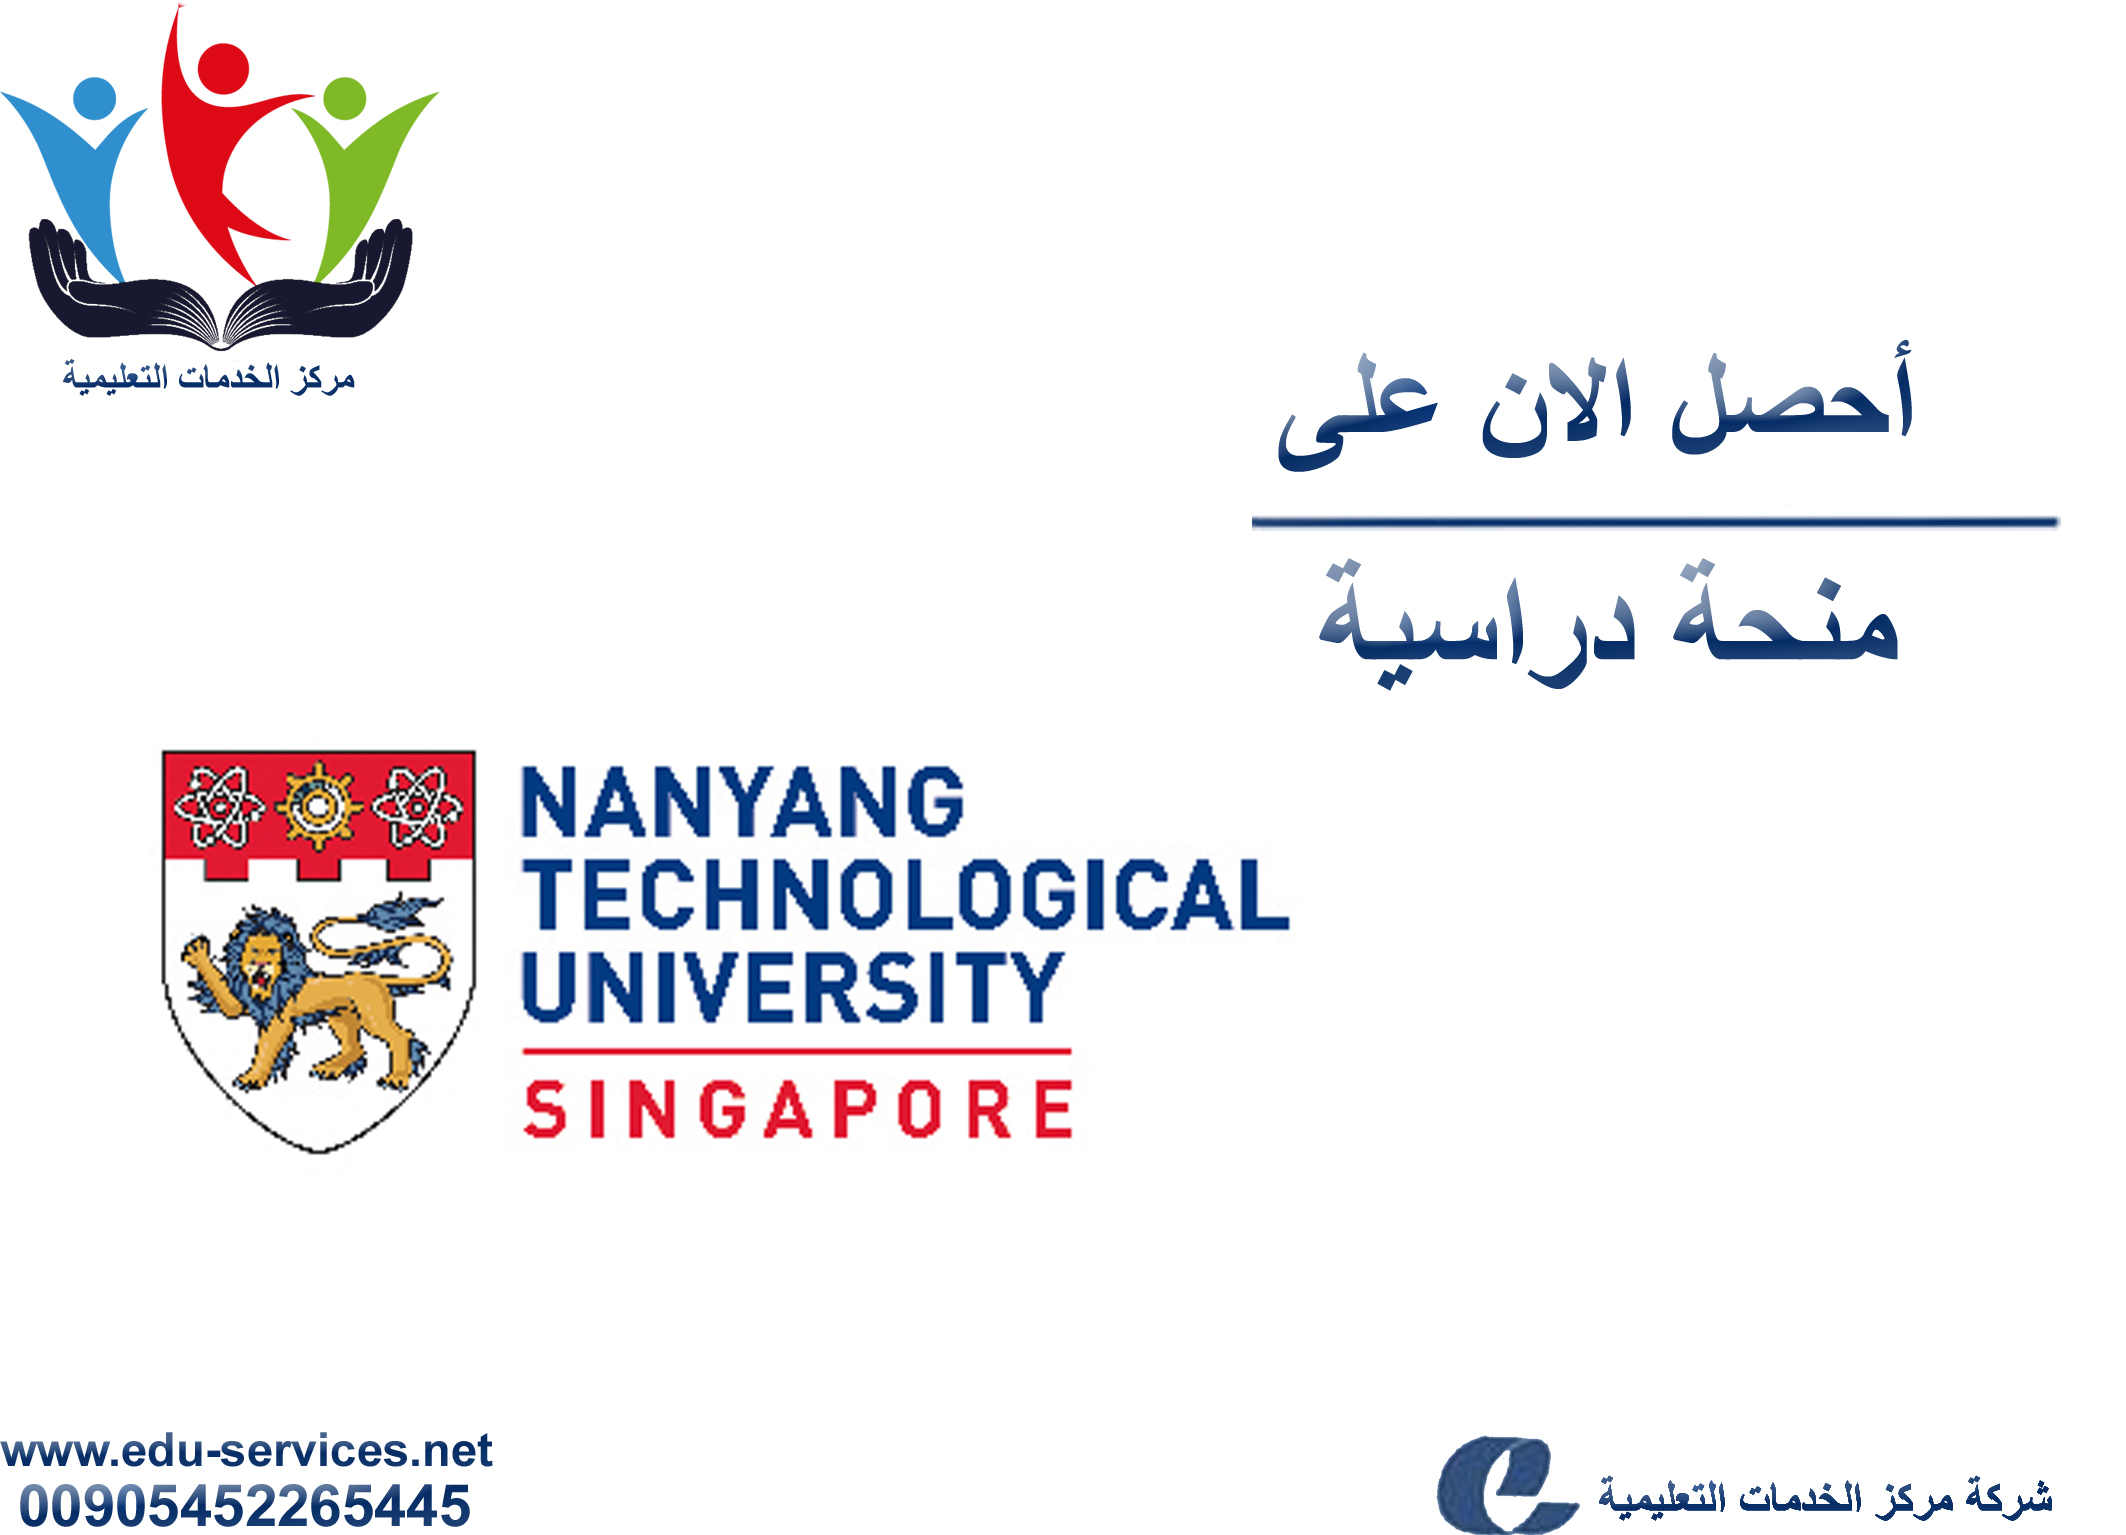 منح دراسية لدرجة البكالوريوس من NTU في سنغافورة للعام 2018-2019